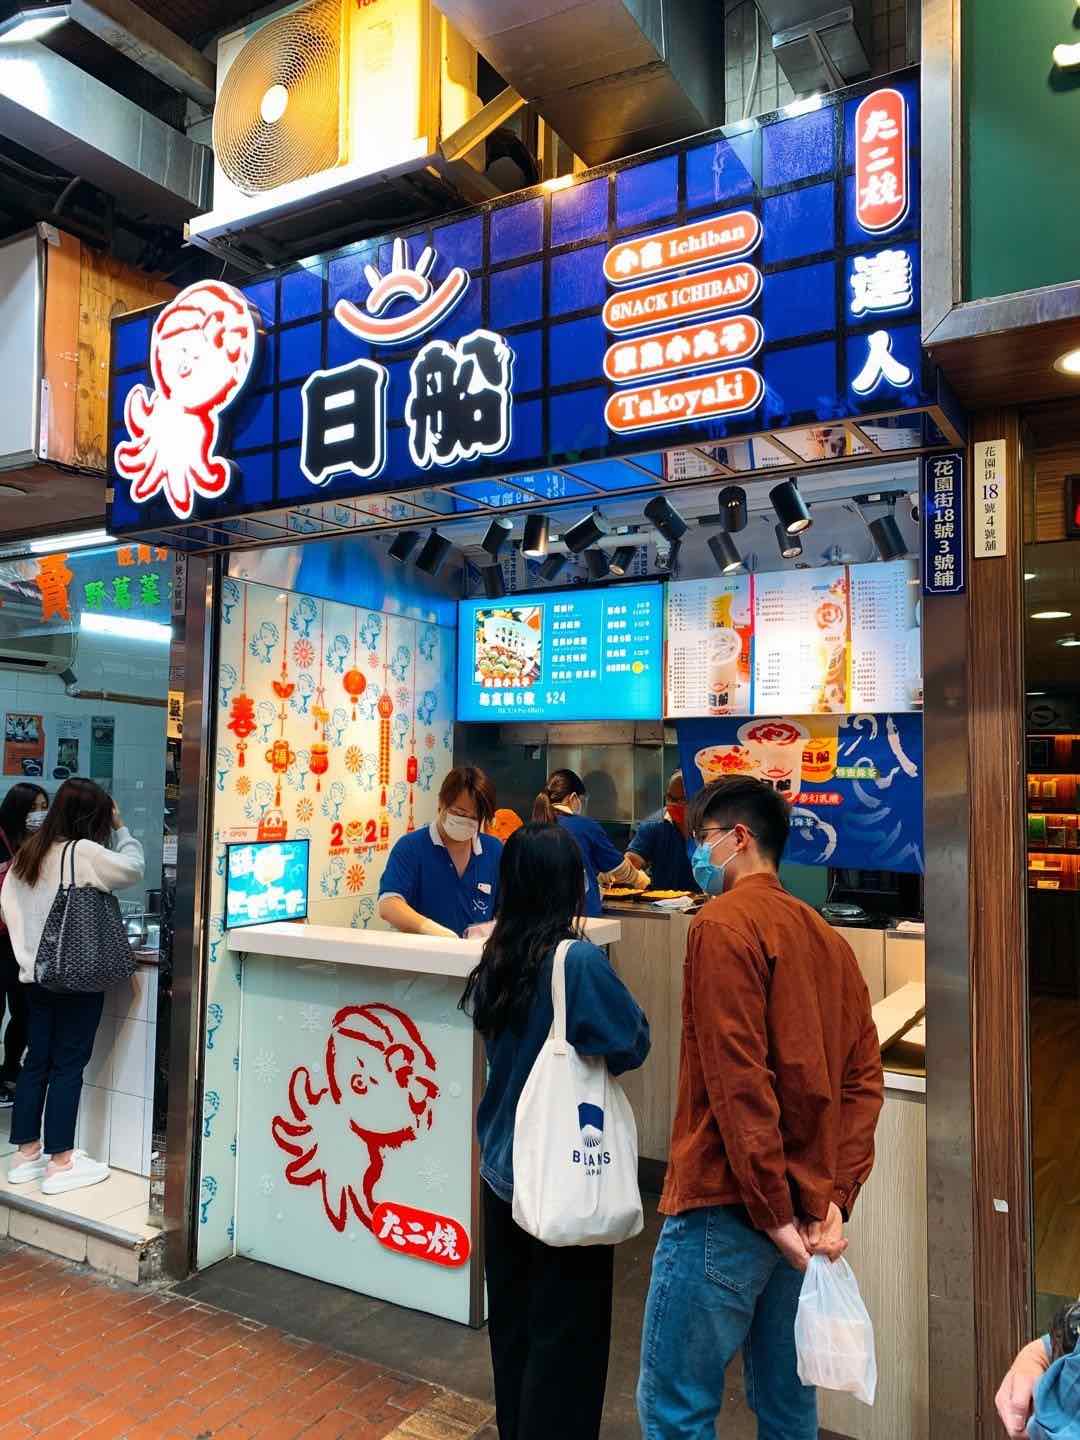 日船章魚小丸子的特許經營香港區加盟店項目5